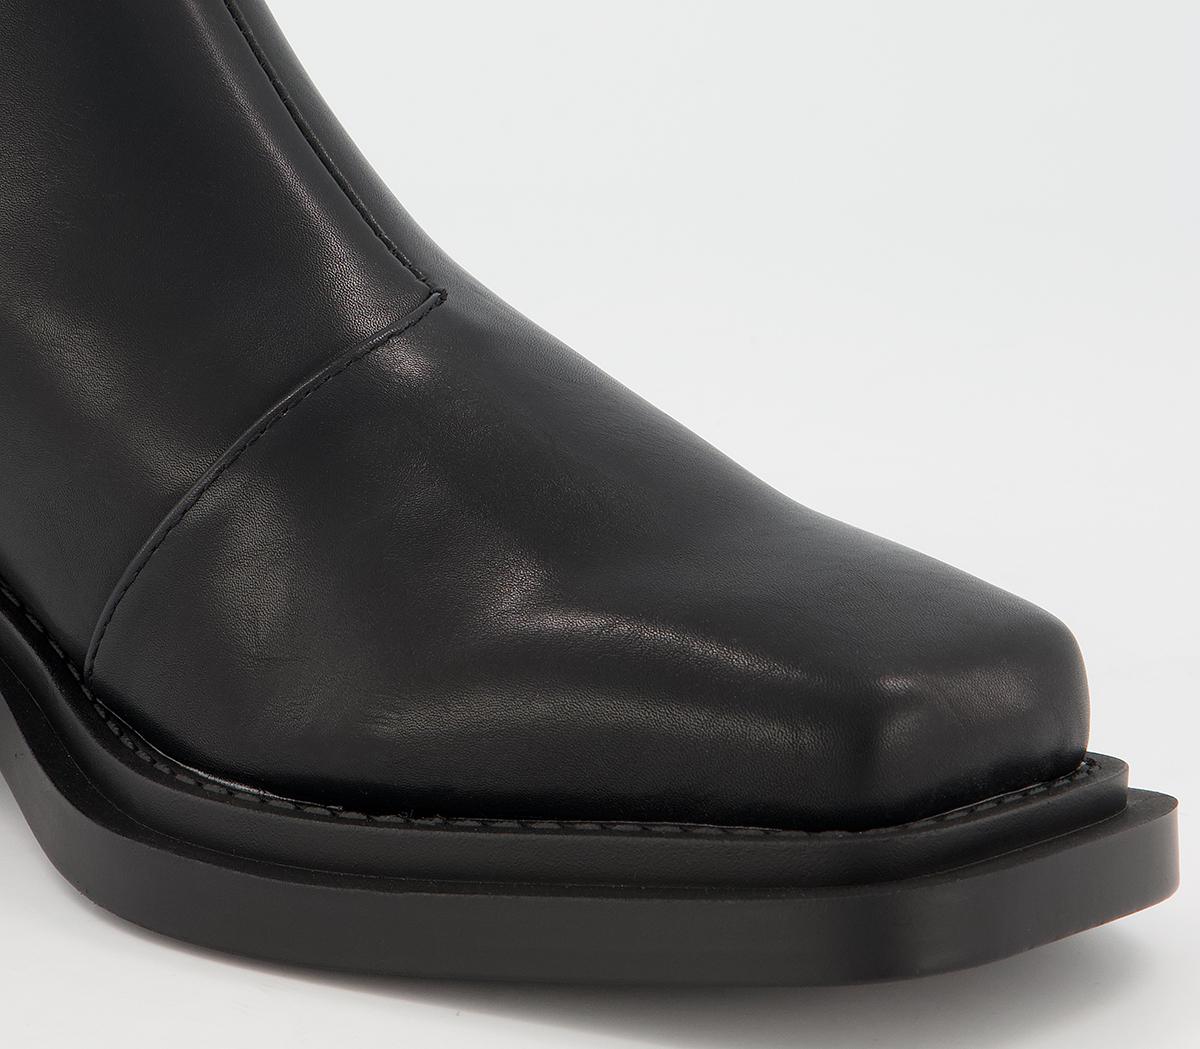 Raid Odette Boots Black - Women's Ankle Boots